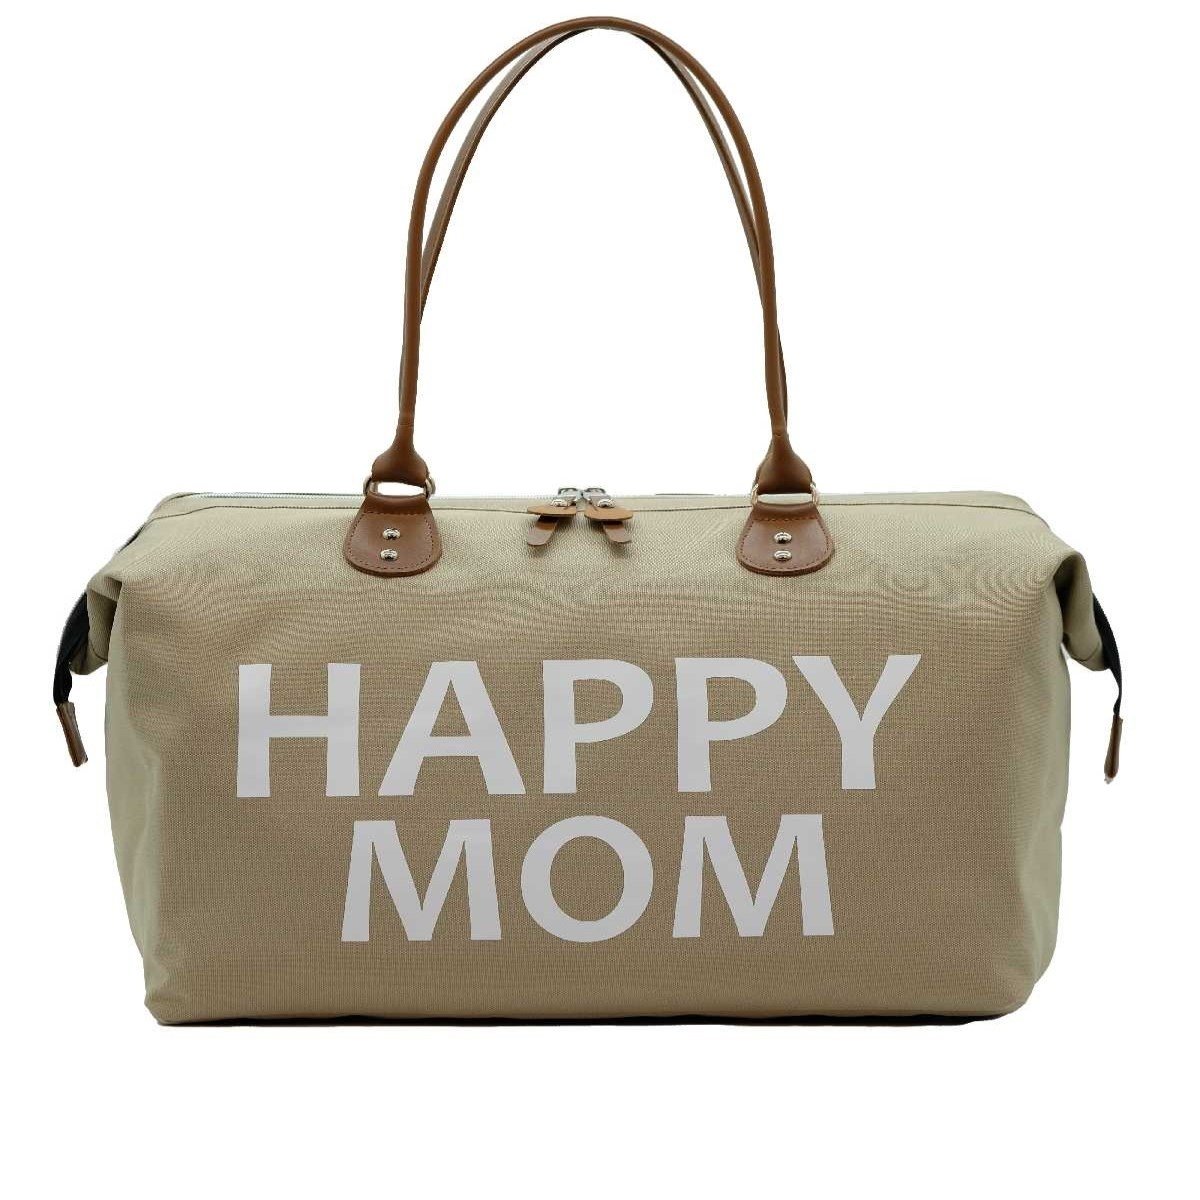 HappyMom - HappyMom Bebek Bakım Çantası Bej (Mommy Bag) - 289,90 TL